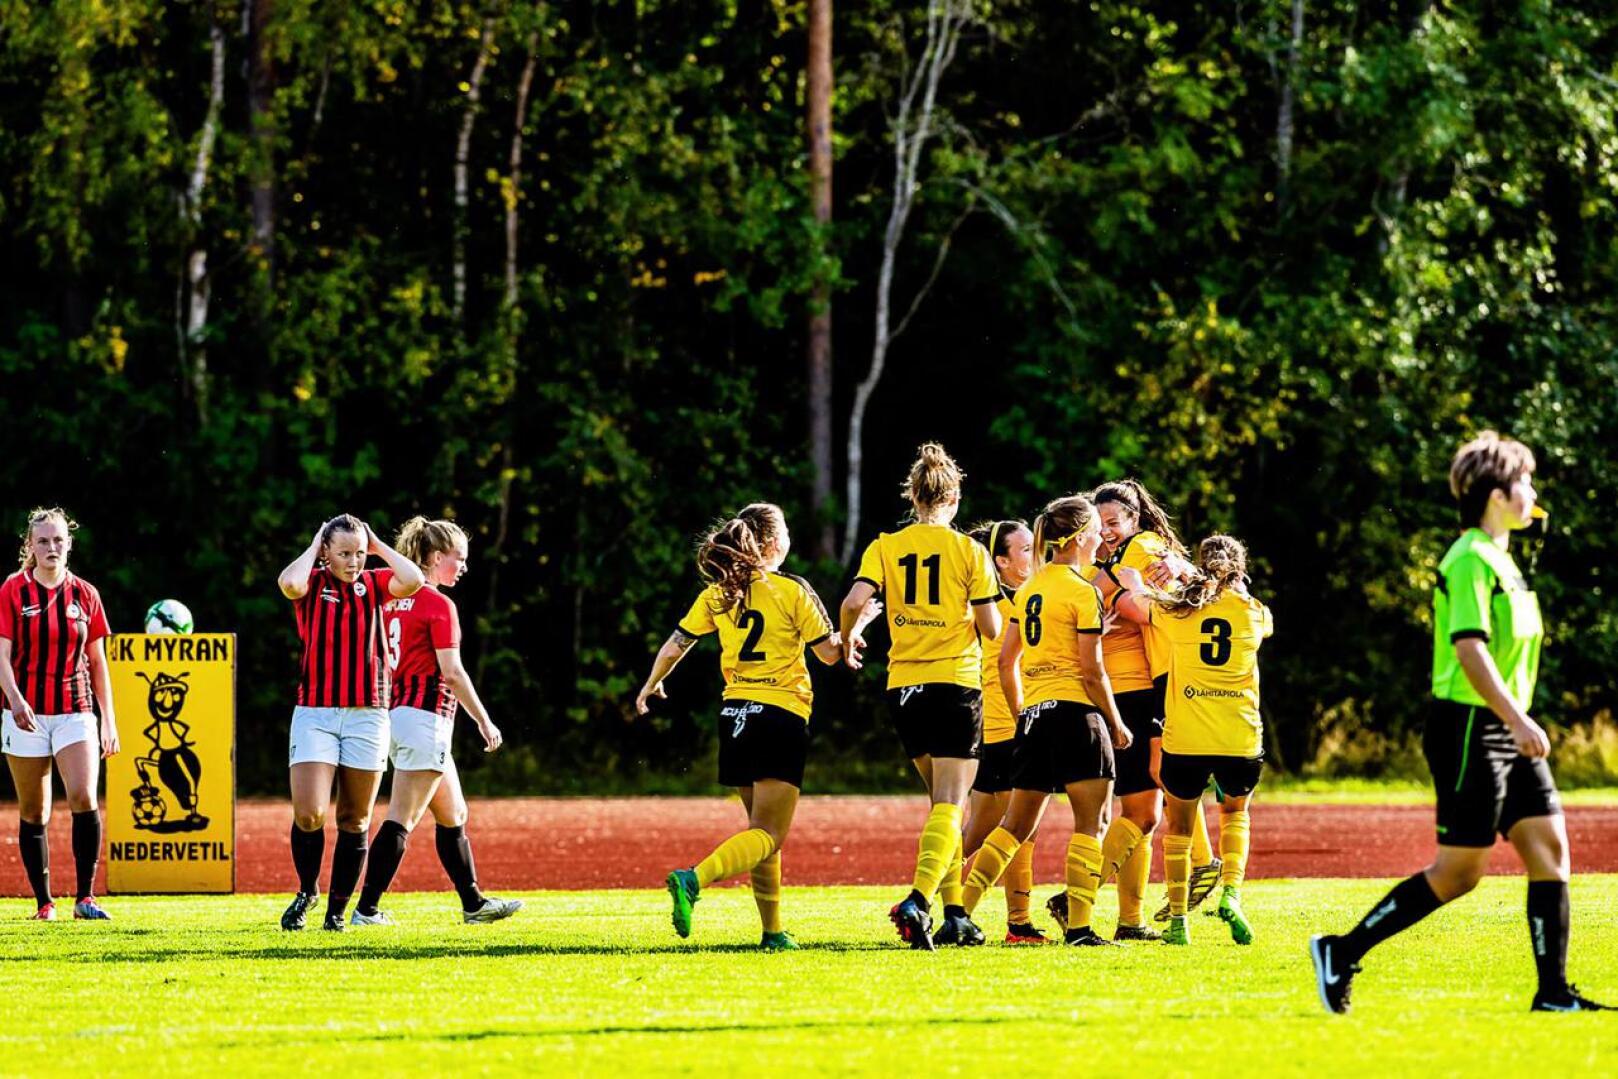 Naisten Ykkösen kärkipeli päättyi IK Myranin juhliin. Kapteeni Annika Grundvall puski voittomaalin lisäajalla.